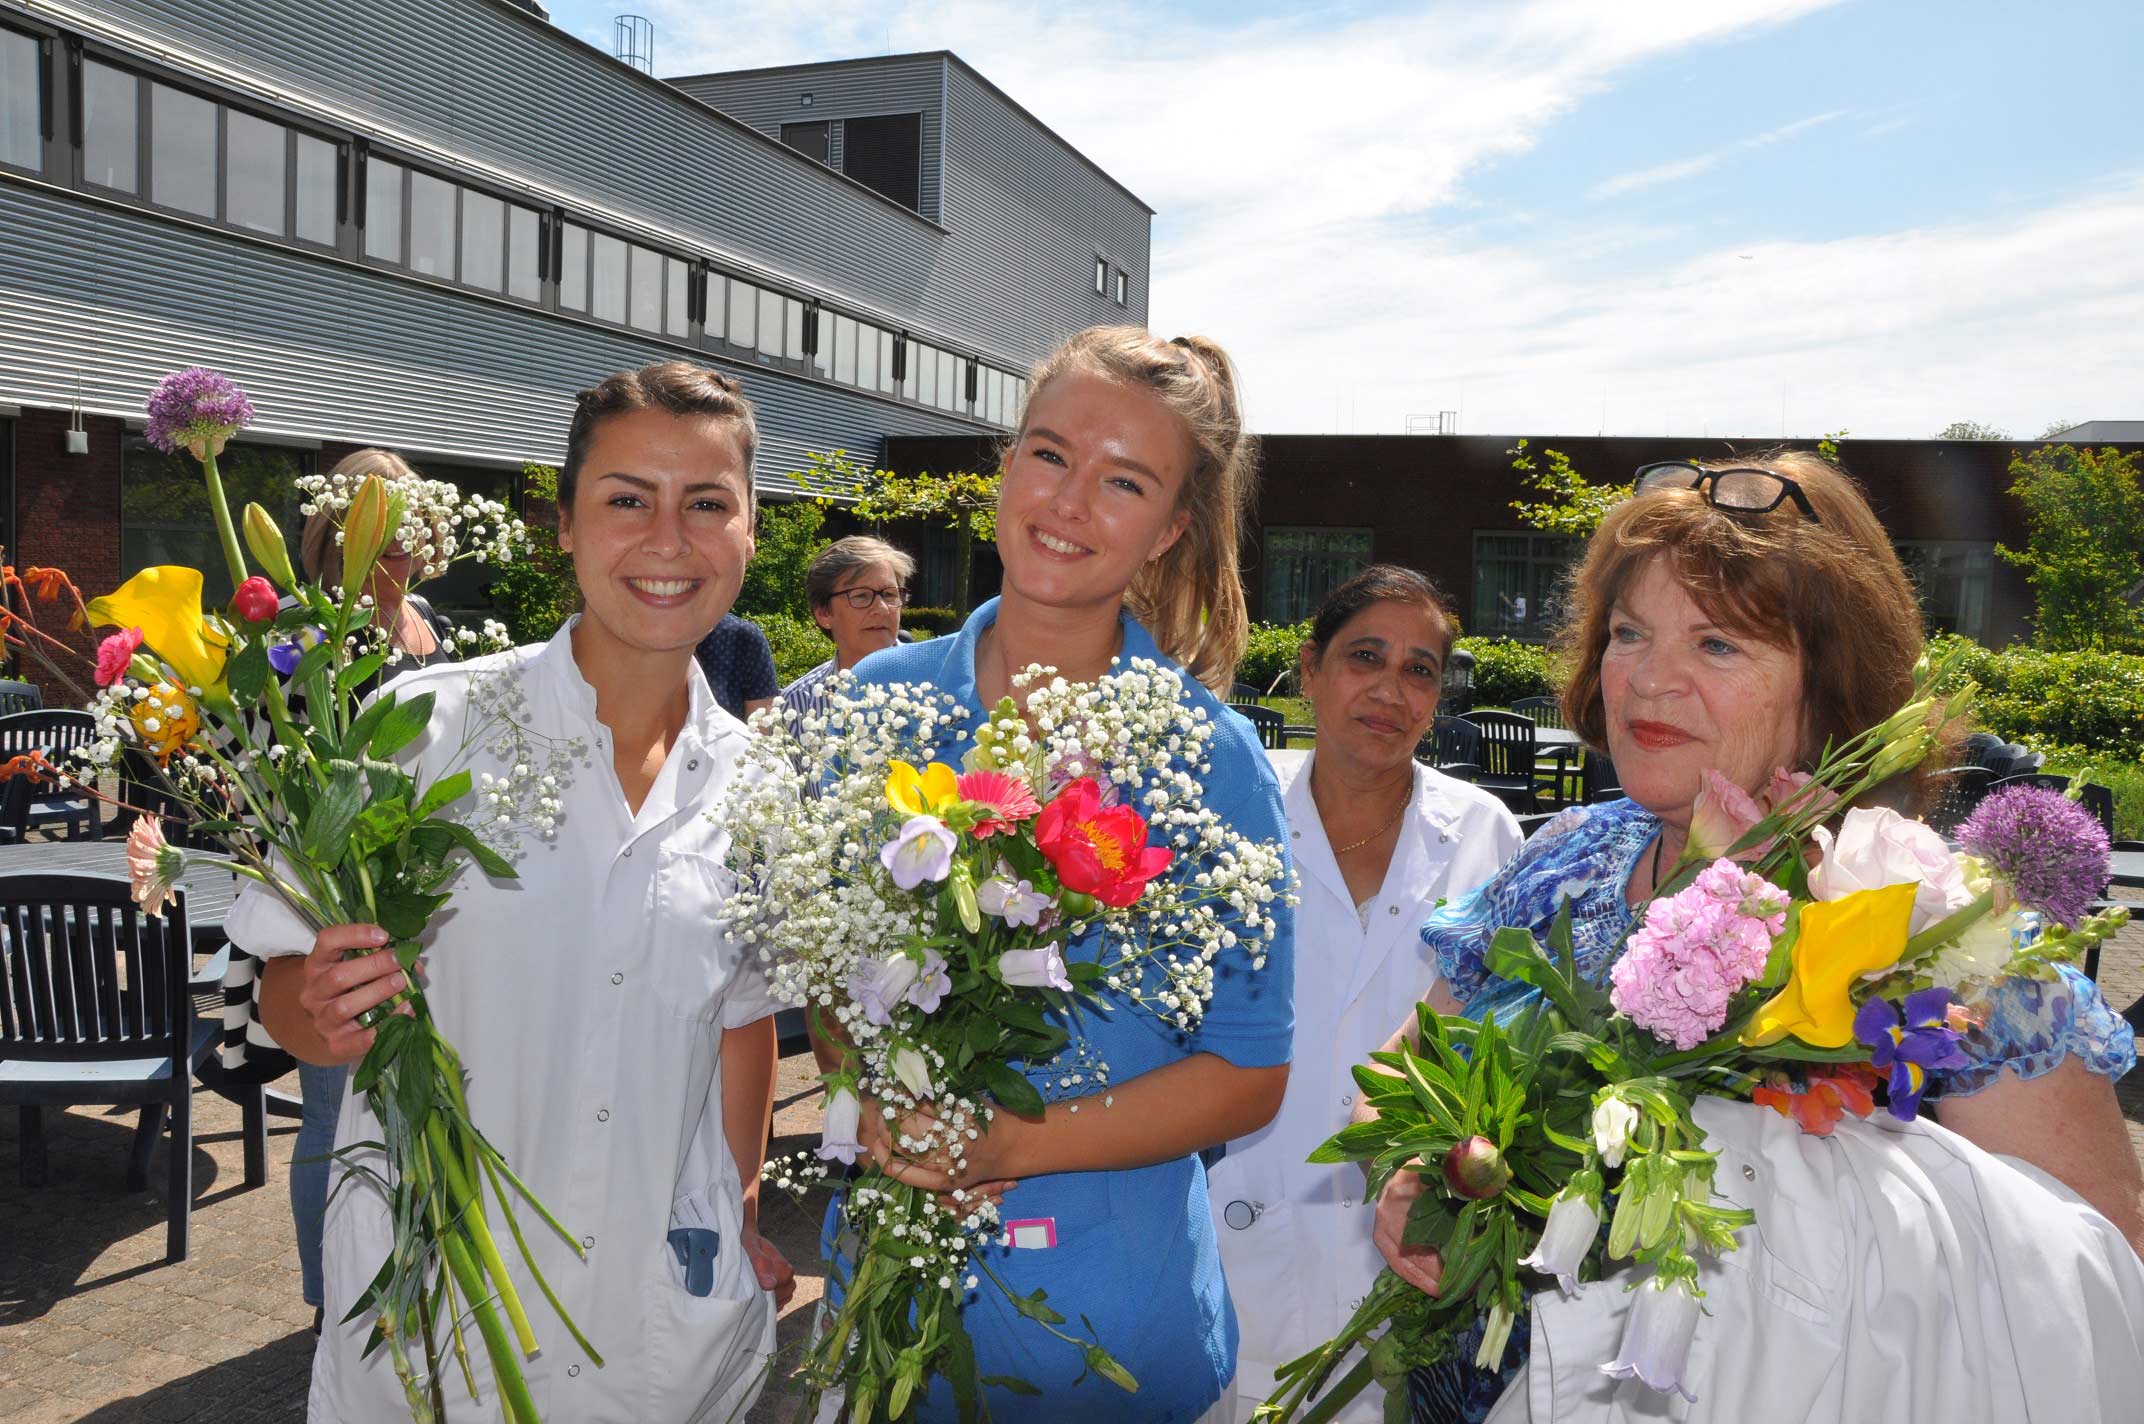 Ziekenhuis verrast haar verpleging met bloemen